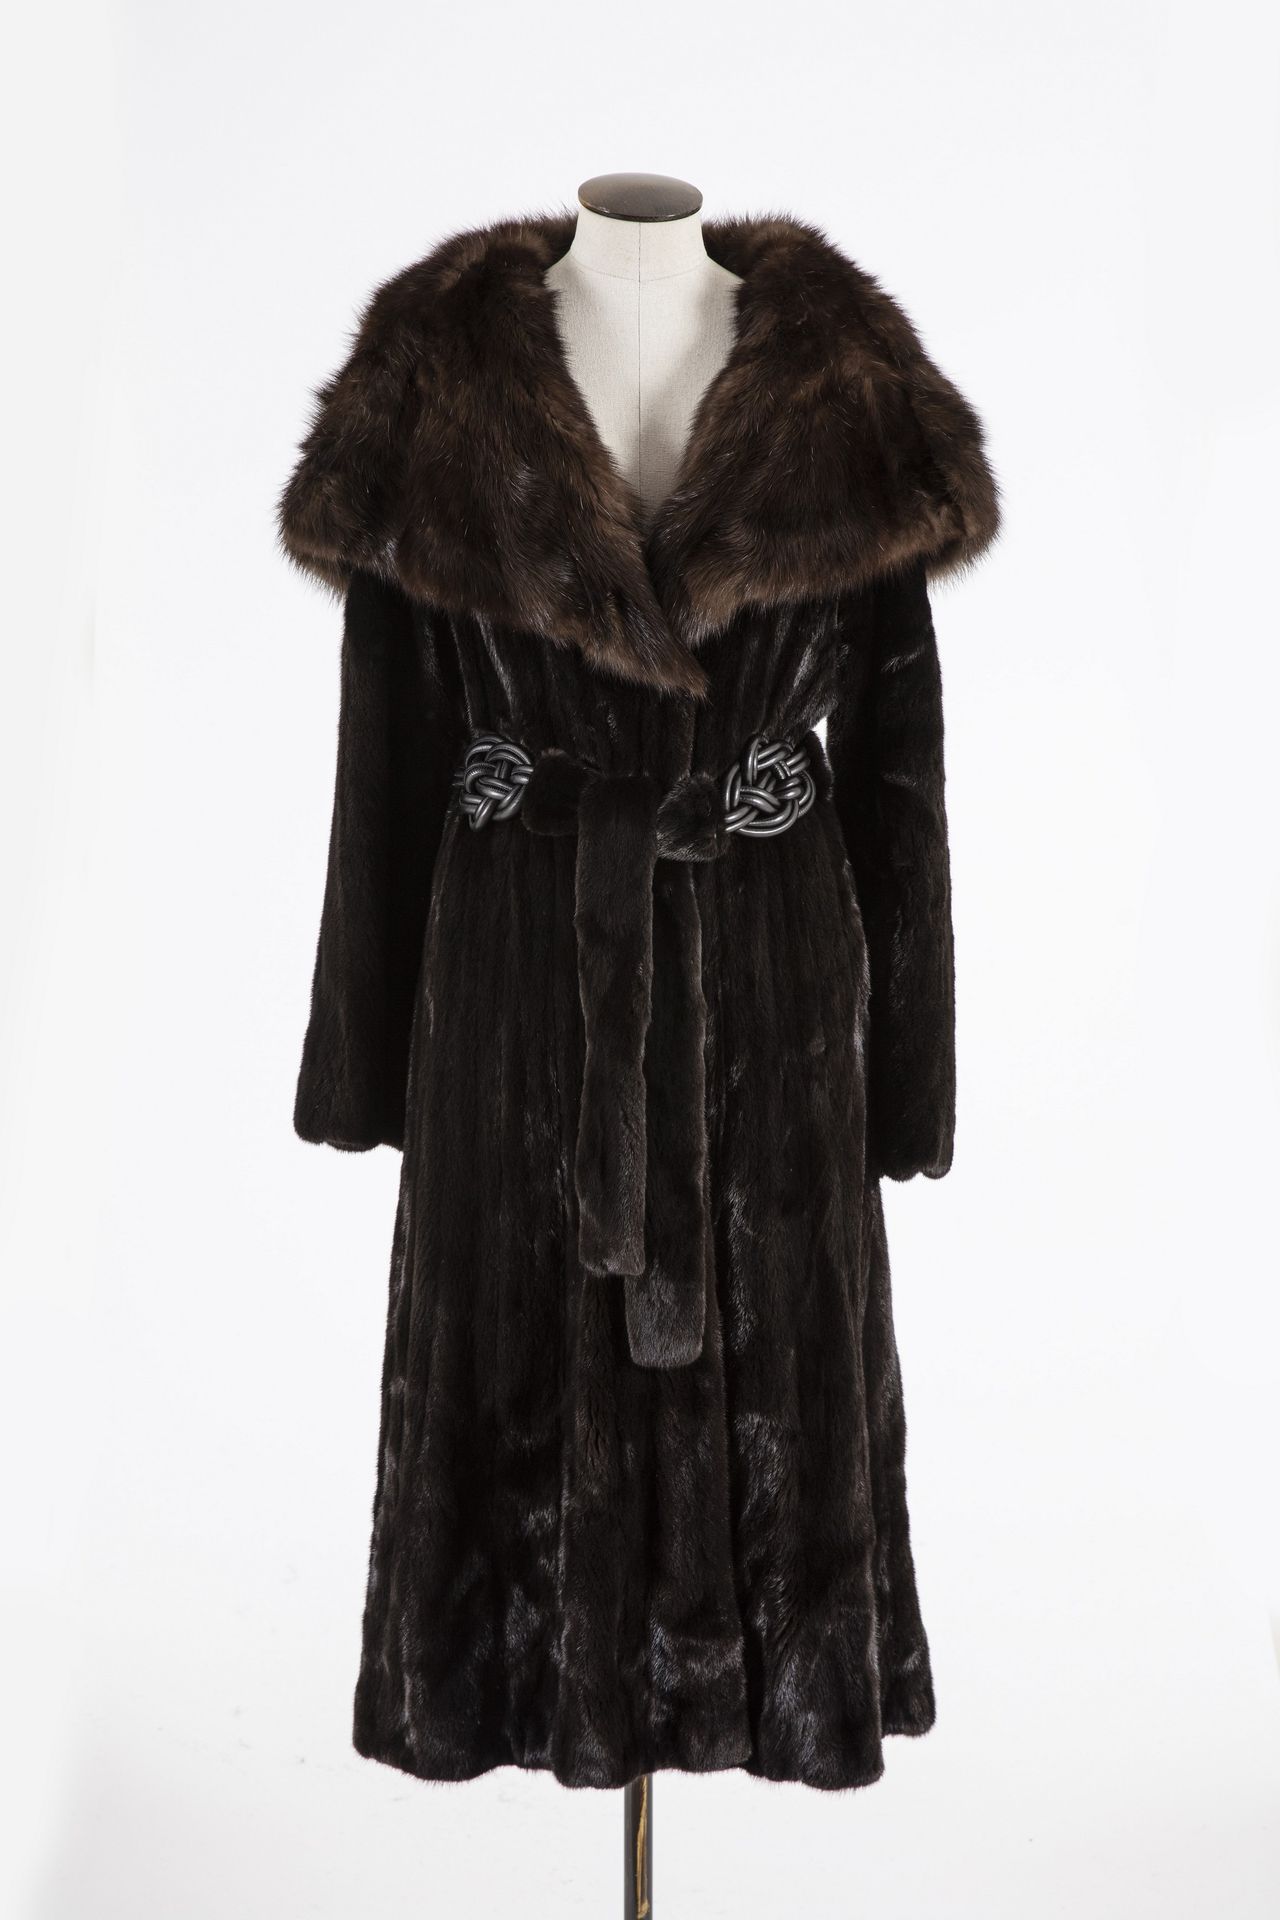 Null BLACK GLAMA : 巧克力色貂皮长外套，有兜帽，侧袋，钩环扣，腰带饰有皮革编织图案，长袖。T. 40- 42